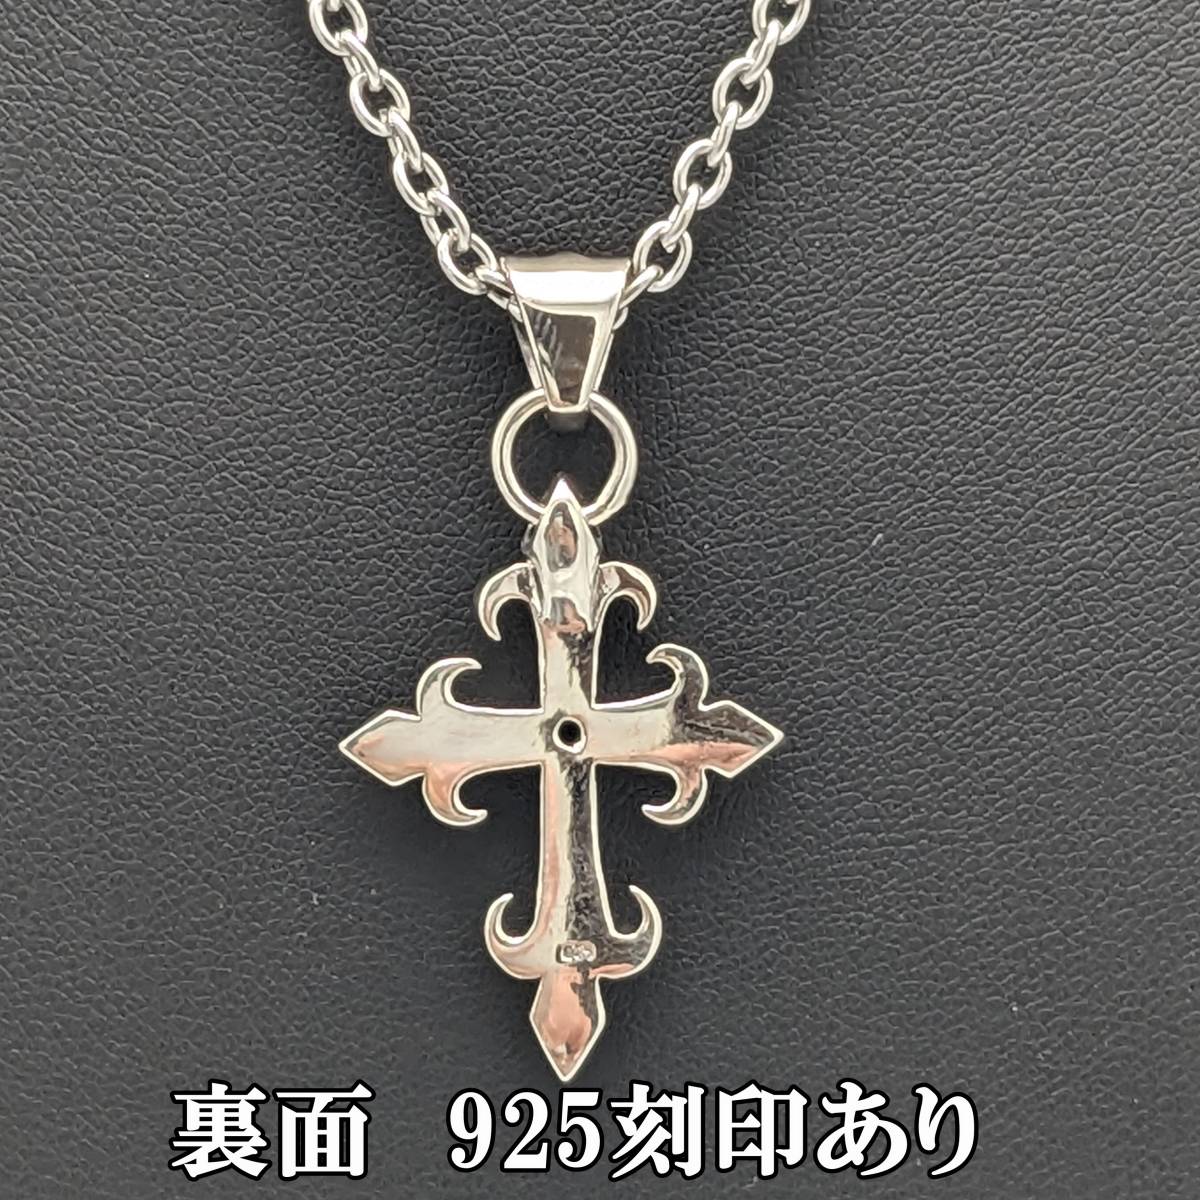 人気の製品 シルバー925 クロス ネックレス 十字架 チェーン 50cm ブラック 黒